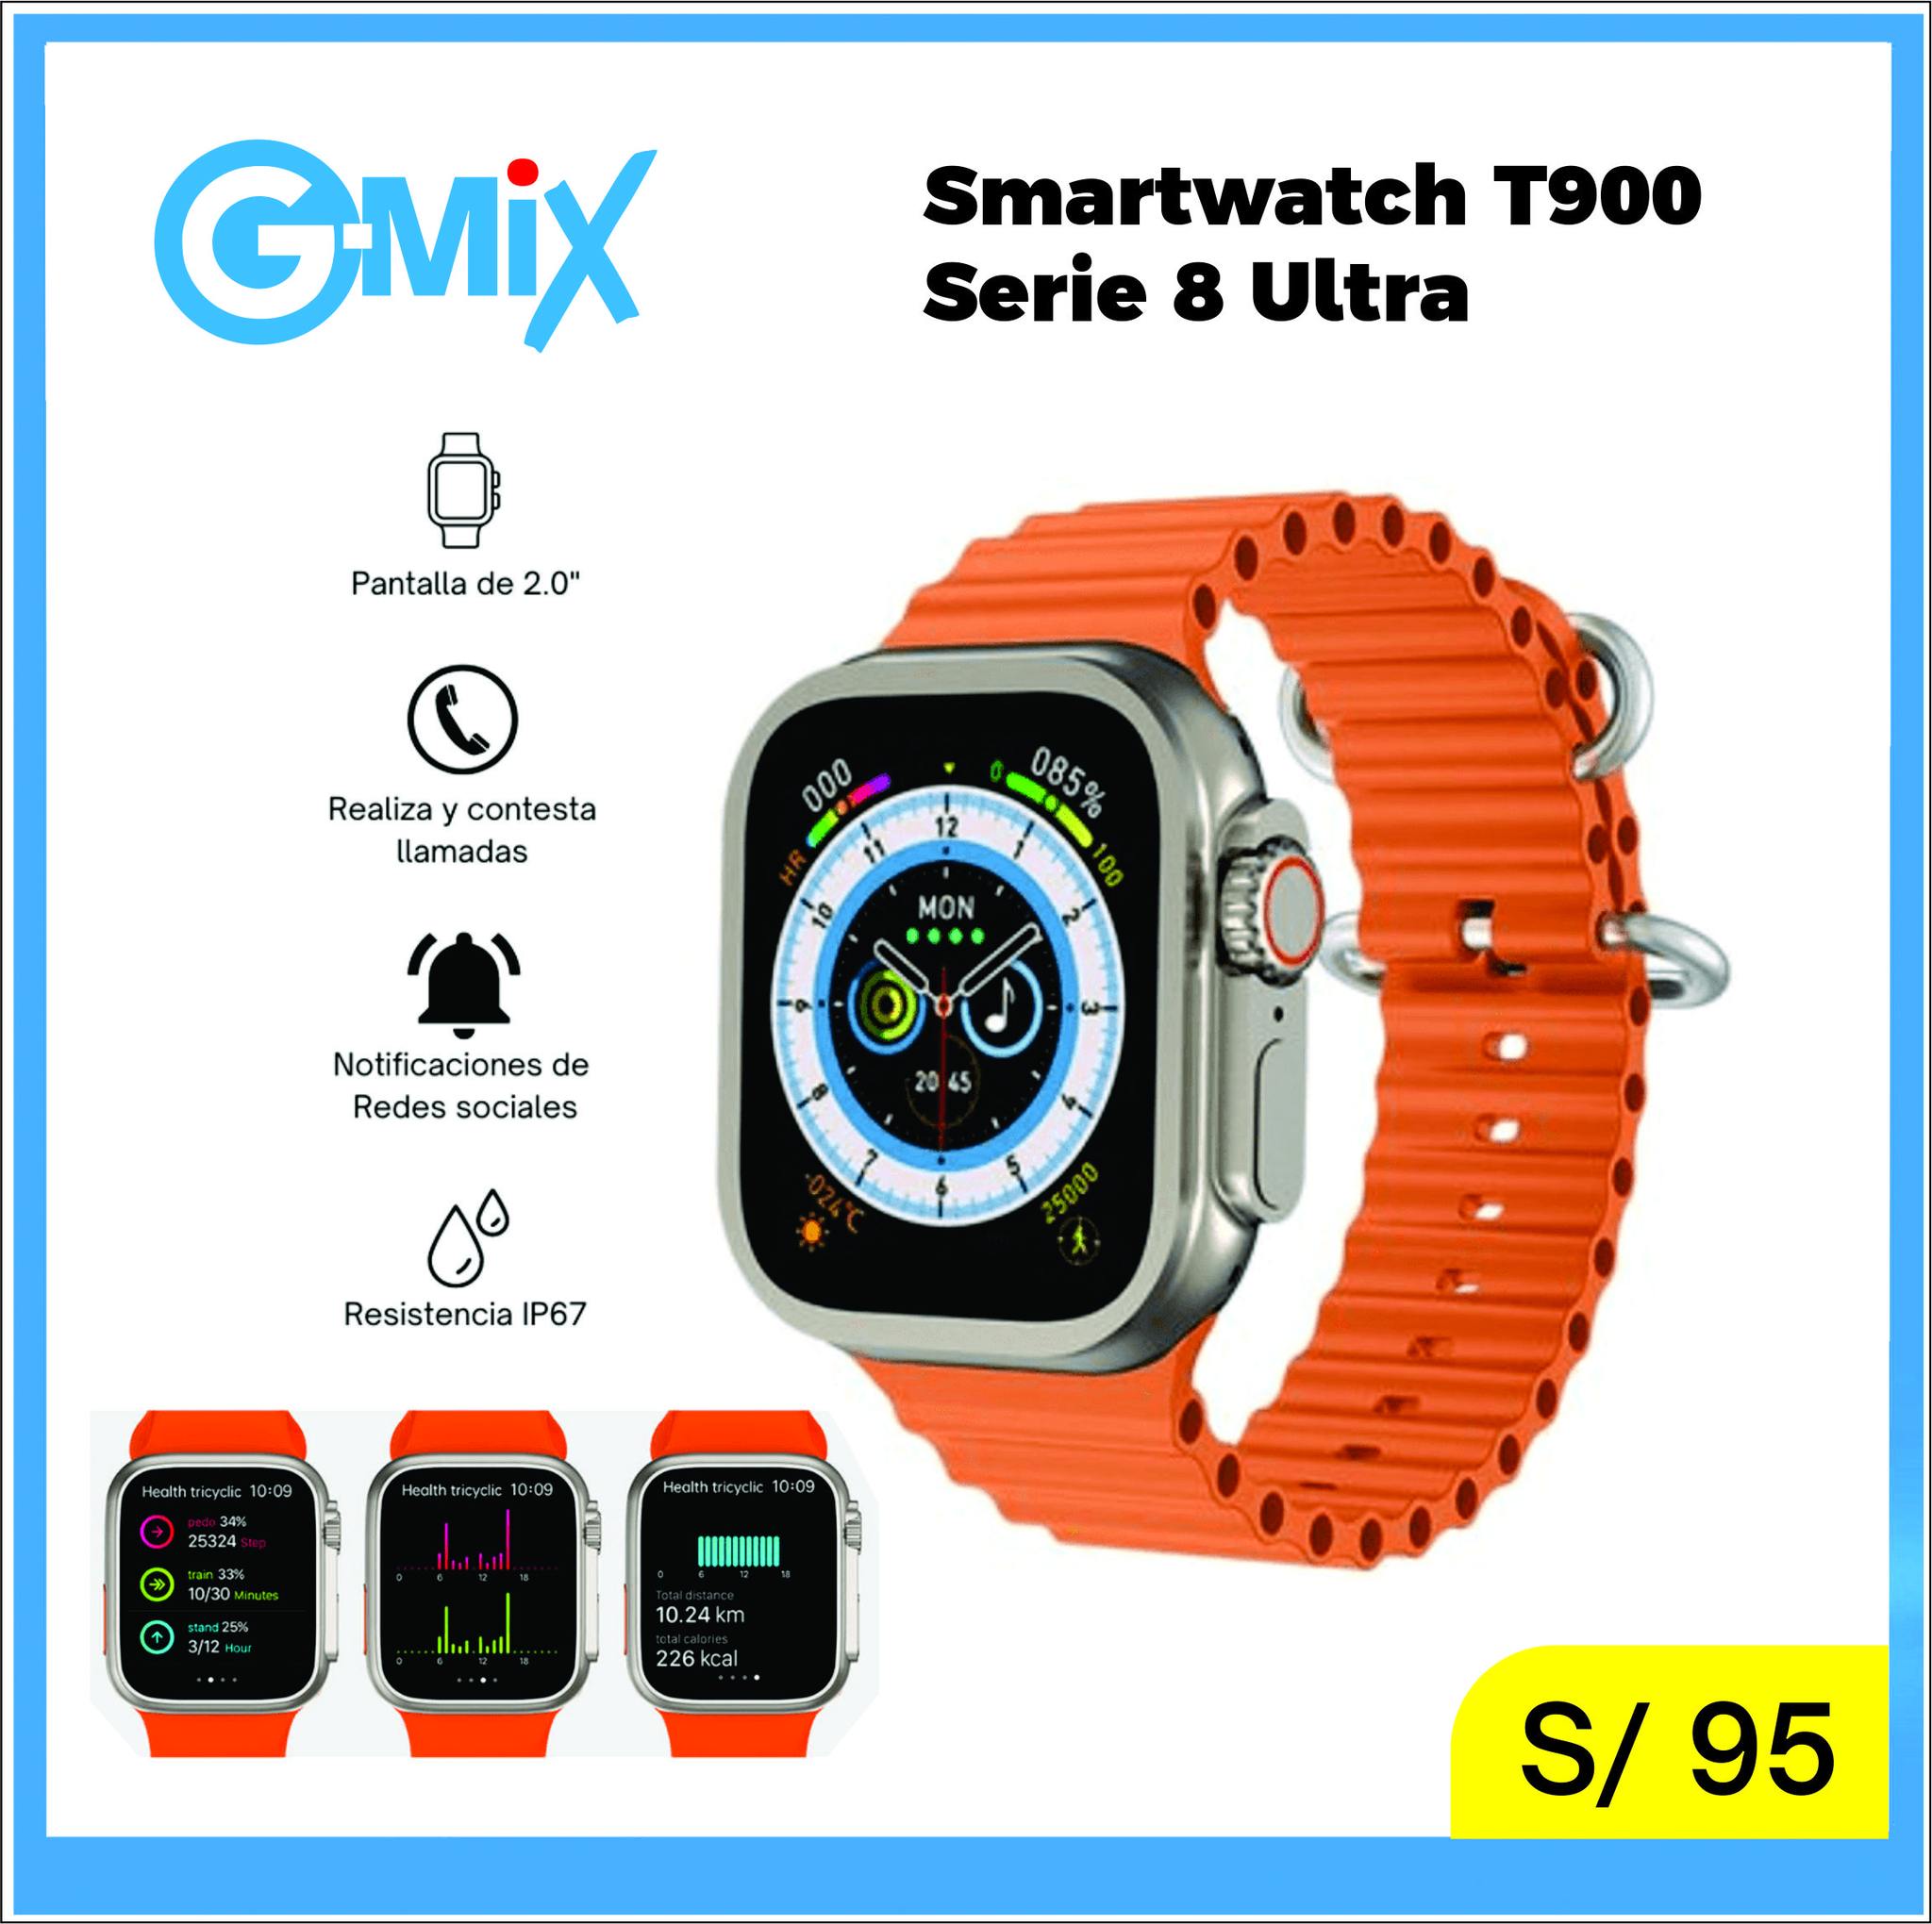 Smartwatch T900 Serie 8 Ultra